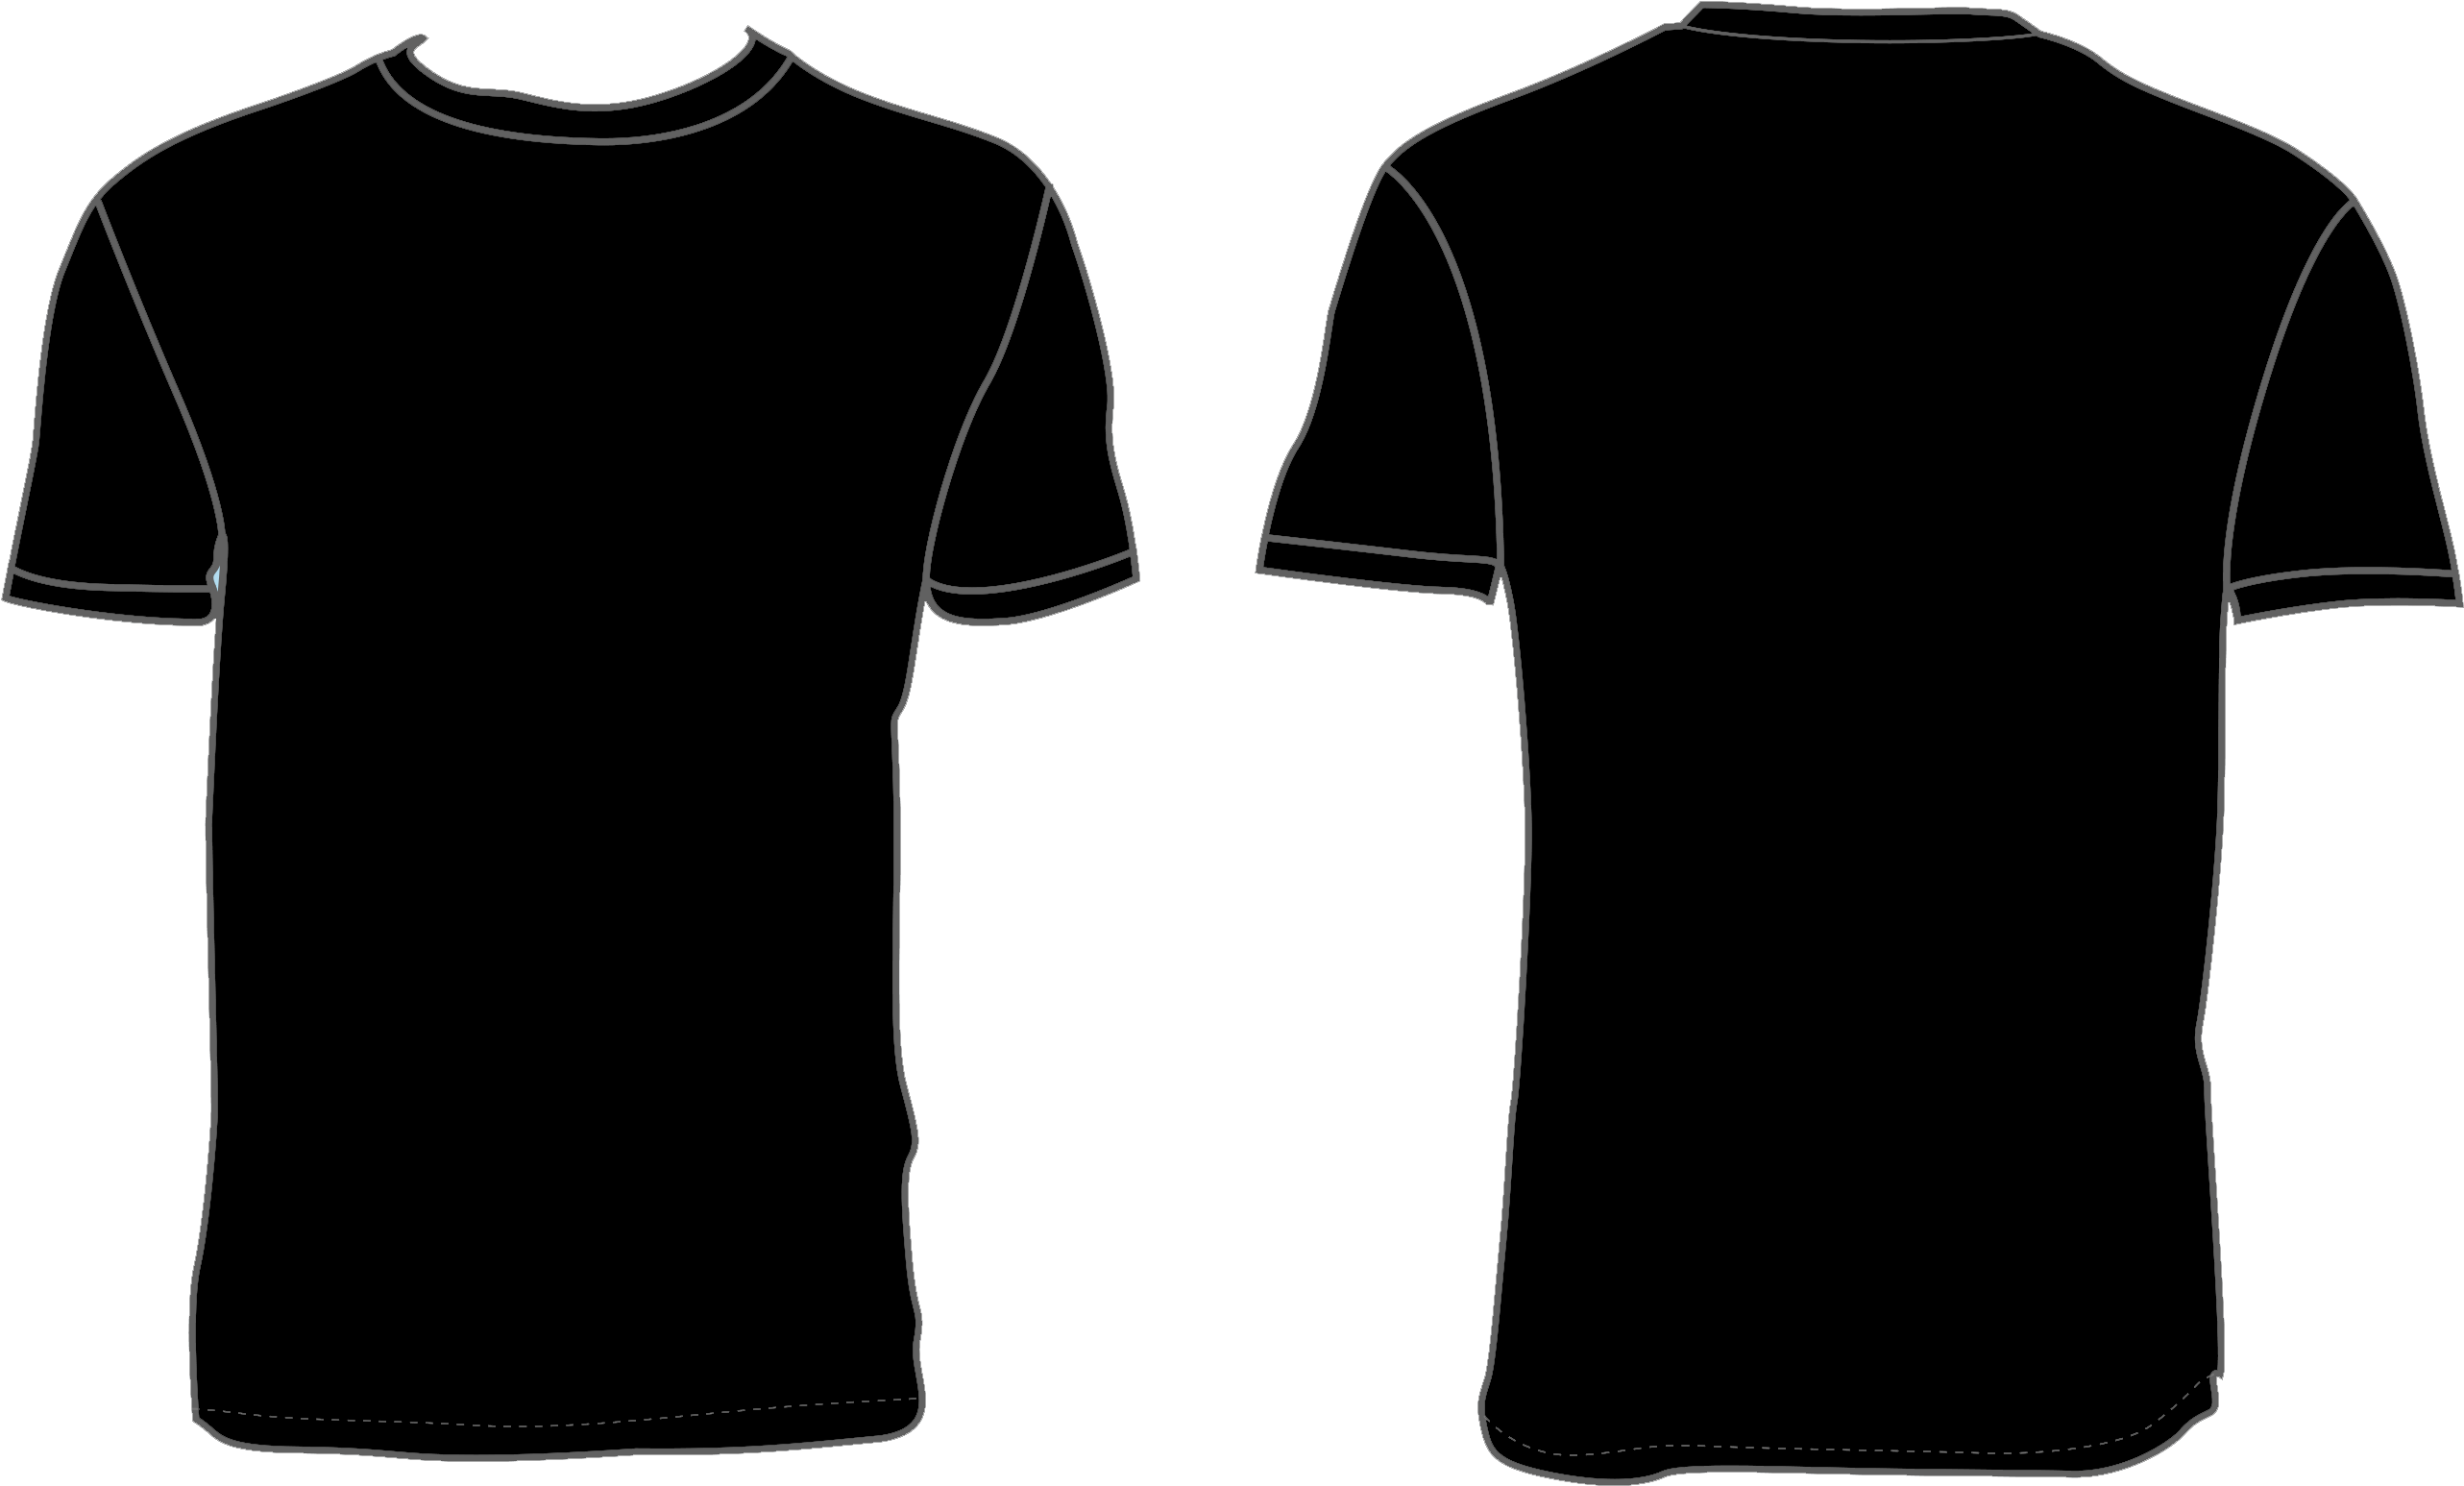 Camiseta negra simple PNG imagen de alta calidad PNG